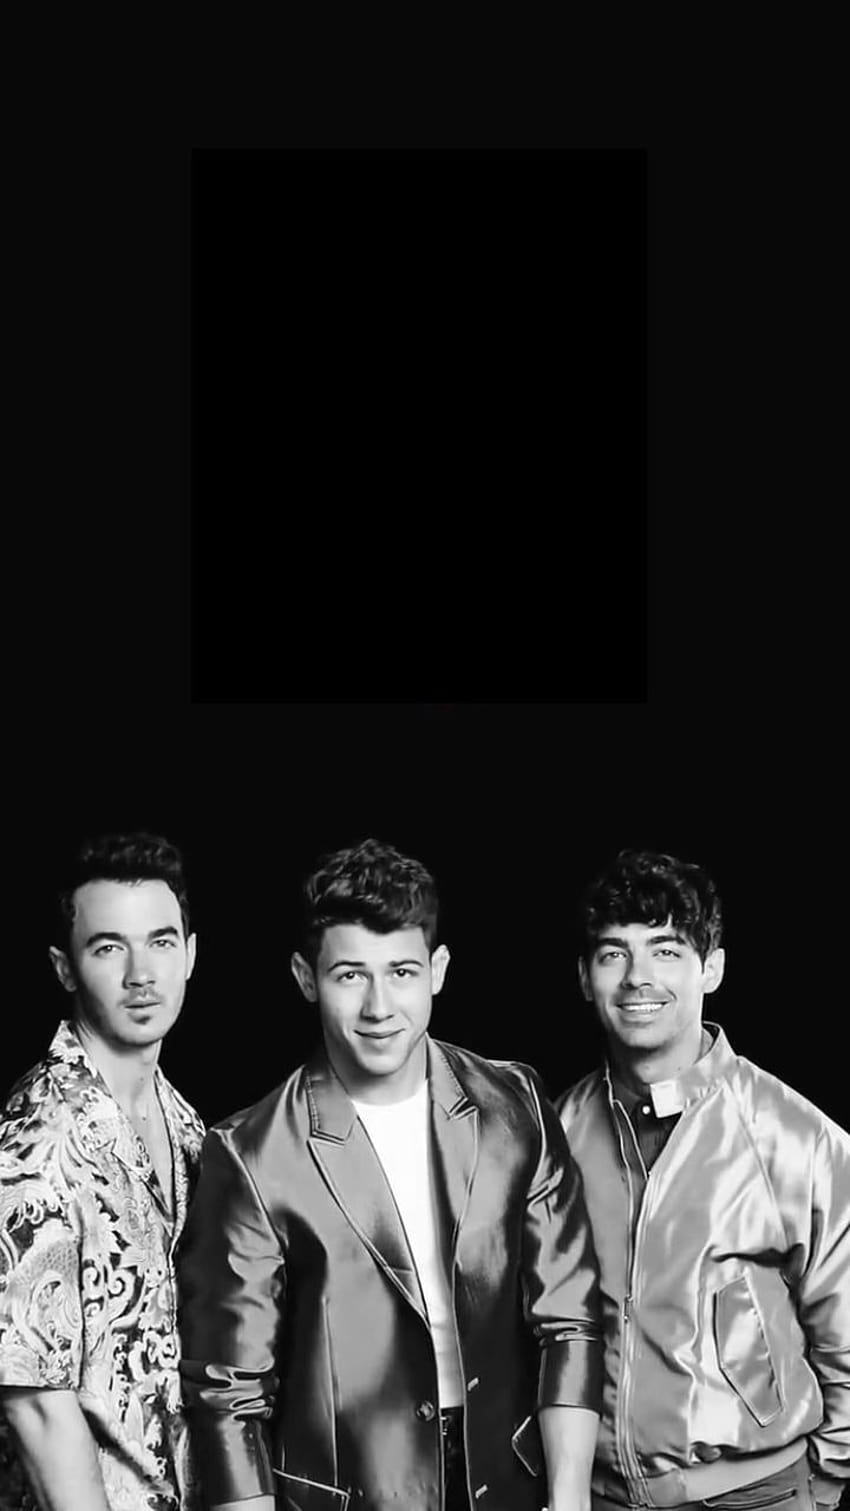 100 Jonas Brothers Wallpapers  Wallpaperscom